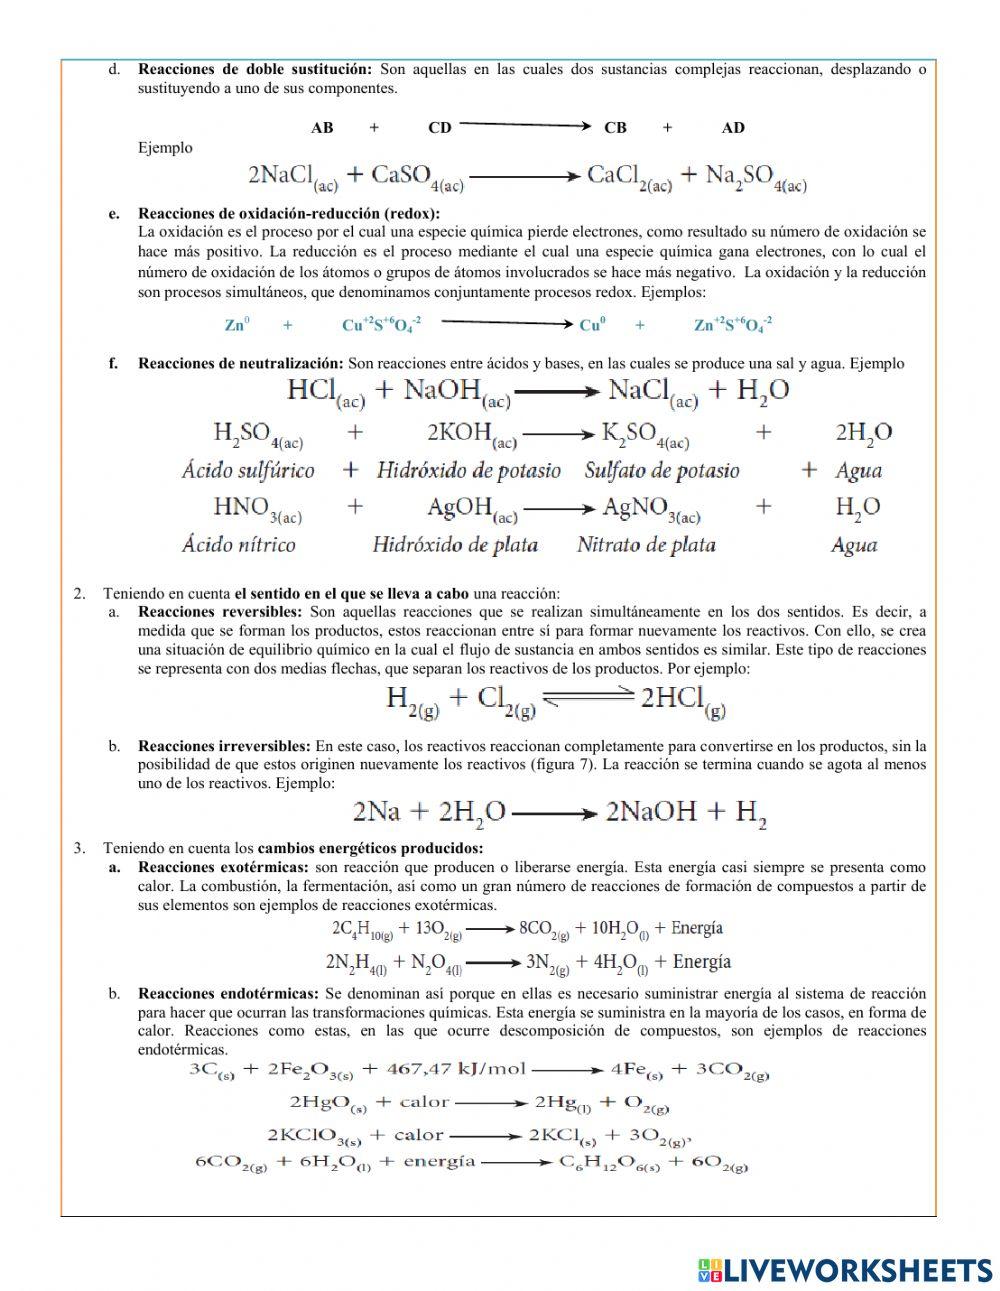 Reacciones y ecuaciones químicas